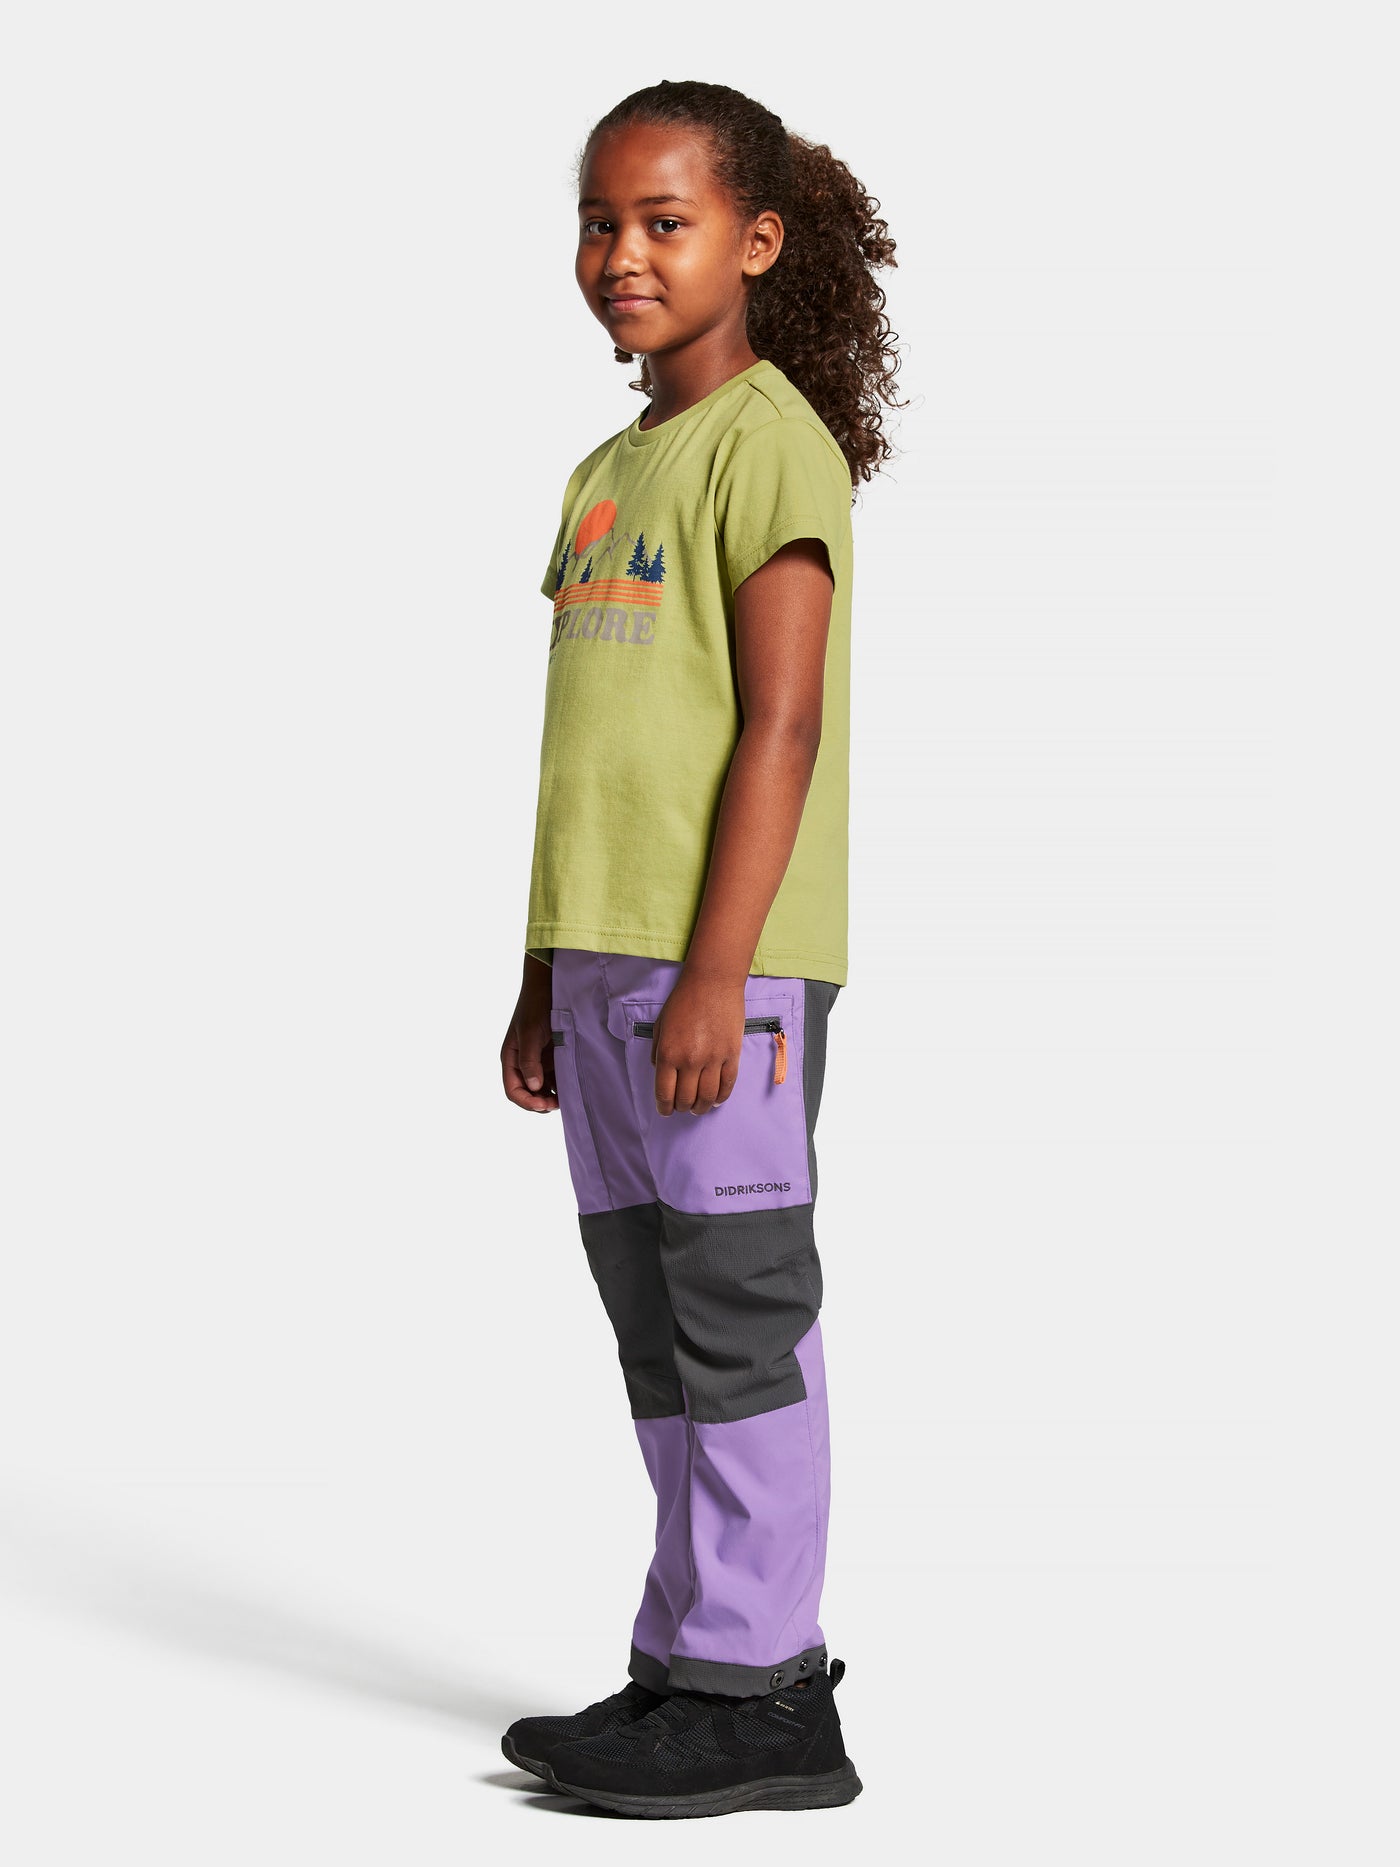 Didriksonsin lasten ja nuorten Mynta logo t-paita vaaleanvihreässä sävyssä tytön päällä sivusta kuvattuna